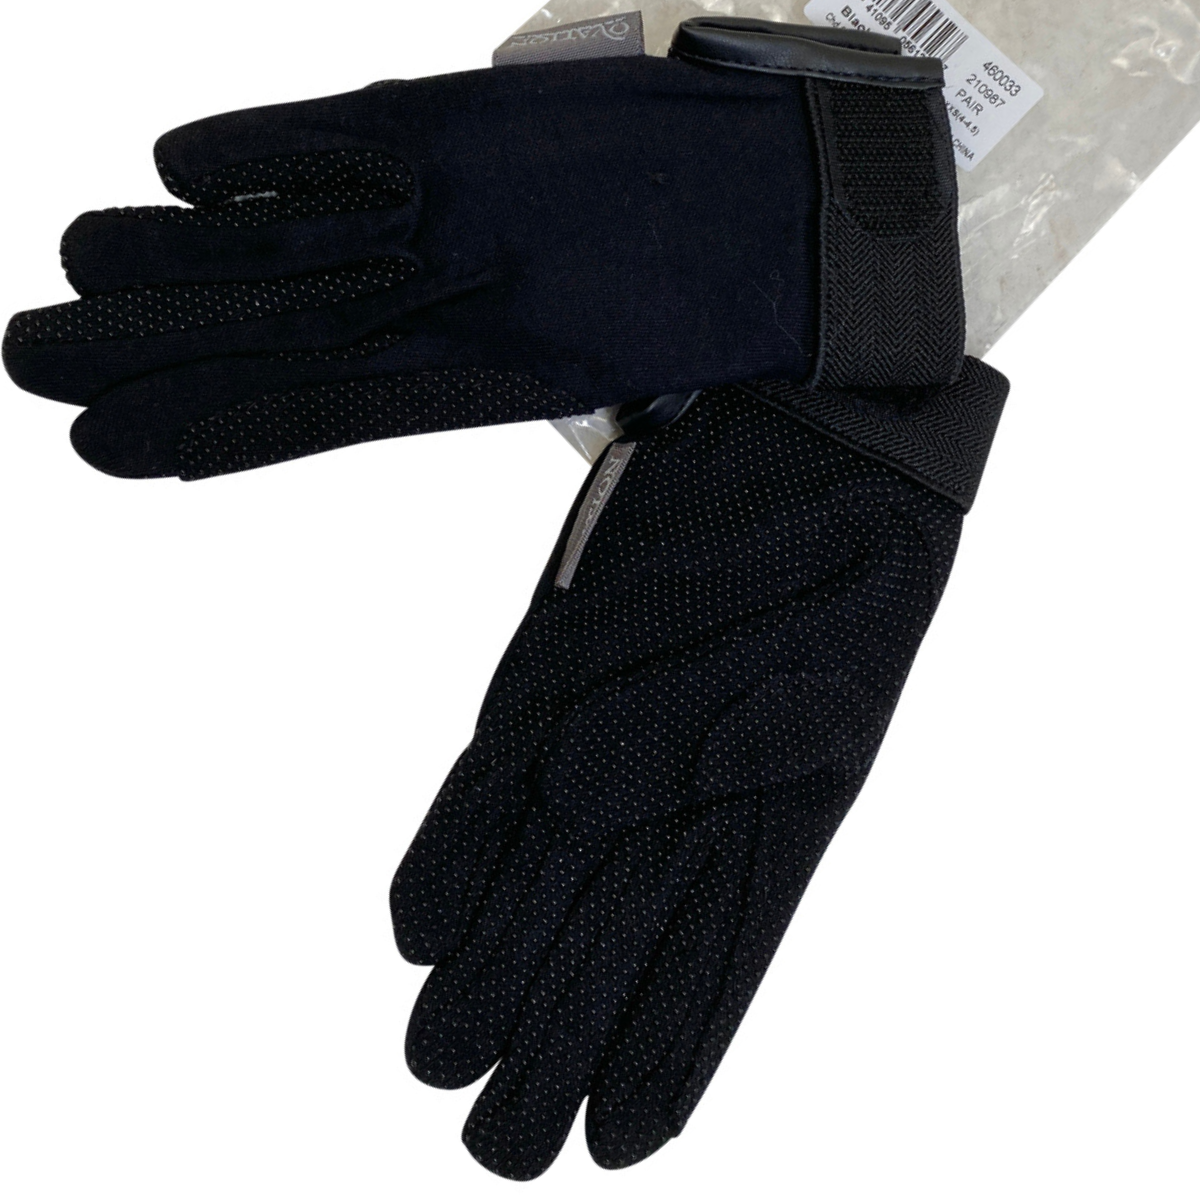 Ovation Cotton-Grip Gloves in Black